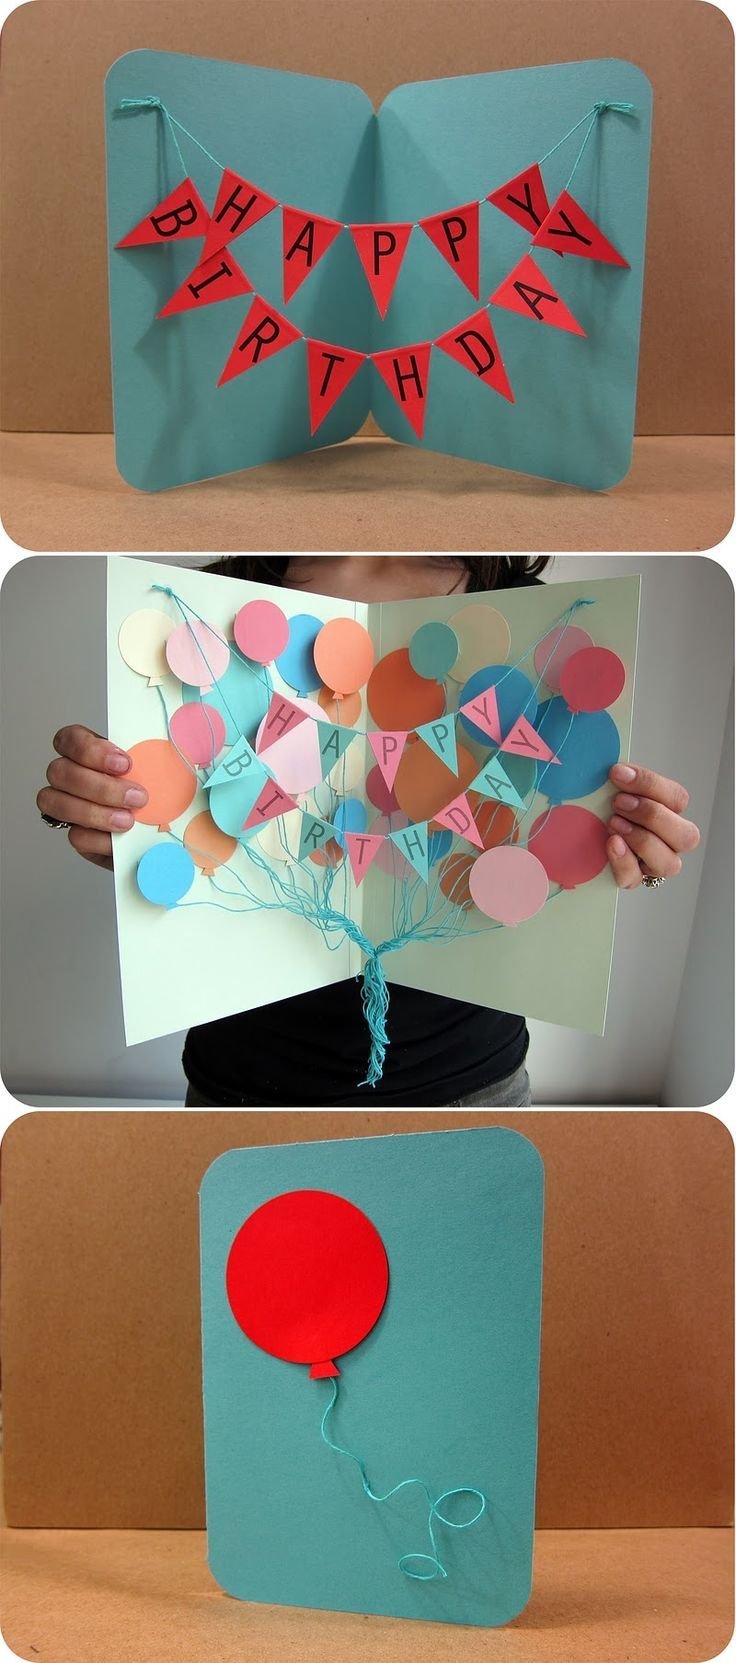 Оригами на день рождения дяде (43 фото) » идеи в изображениях смотреть онлайн и скачать бесплатно